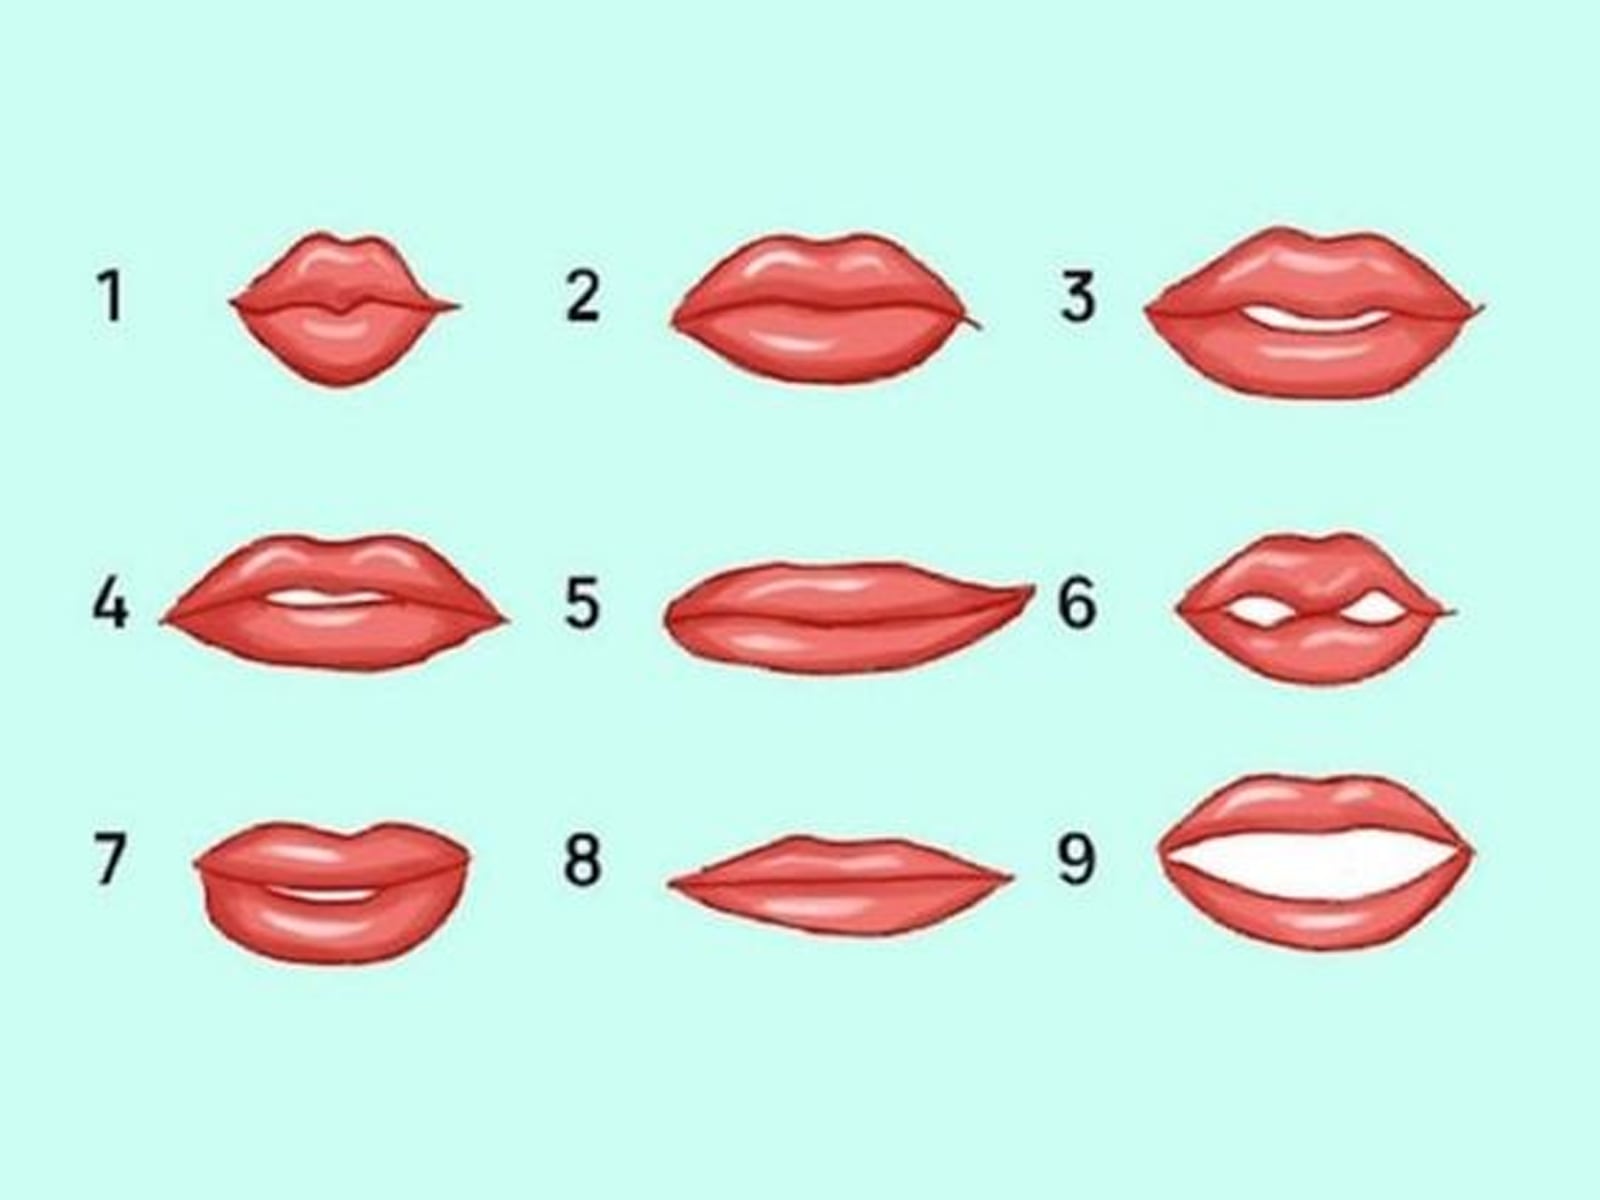 Observa las diferentes formas de labios en la imagen y selecciona la que más se asemeje a la tuya. Luego, descubre qué tipo de mujer eres según los resultados.